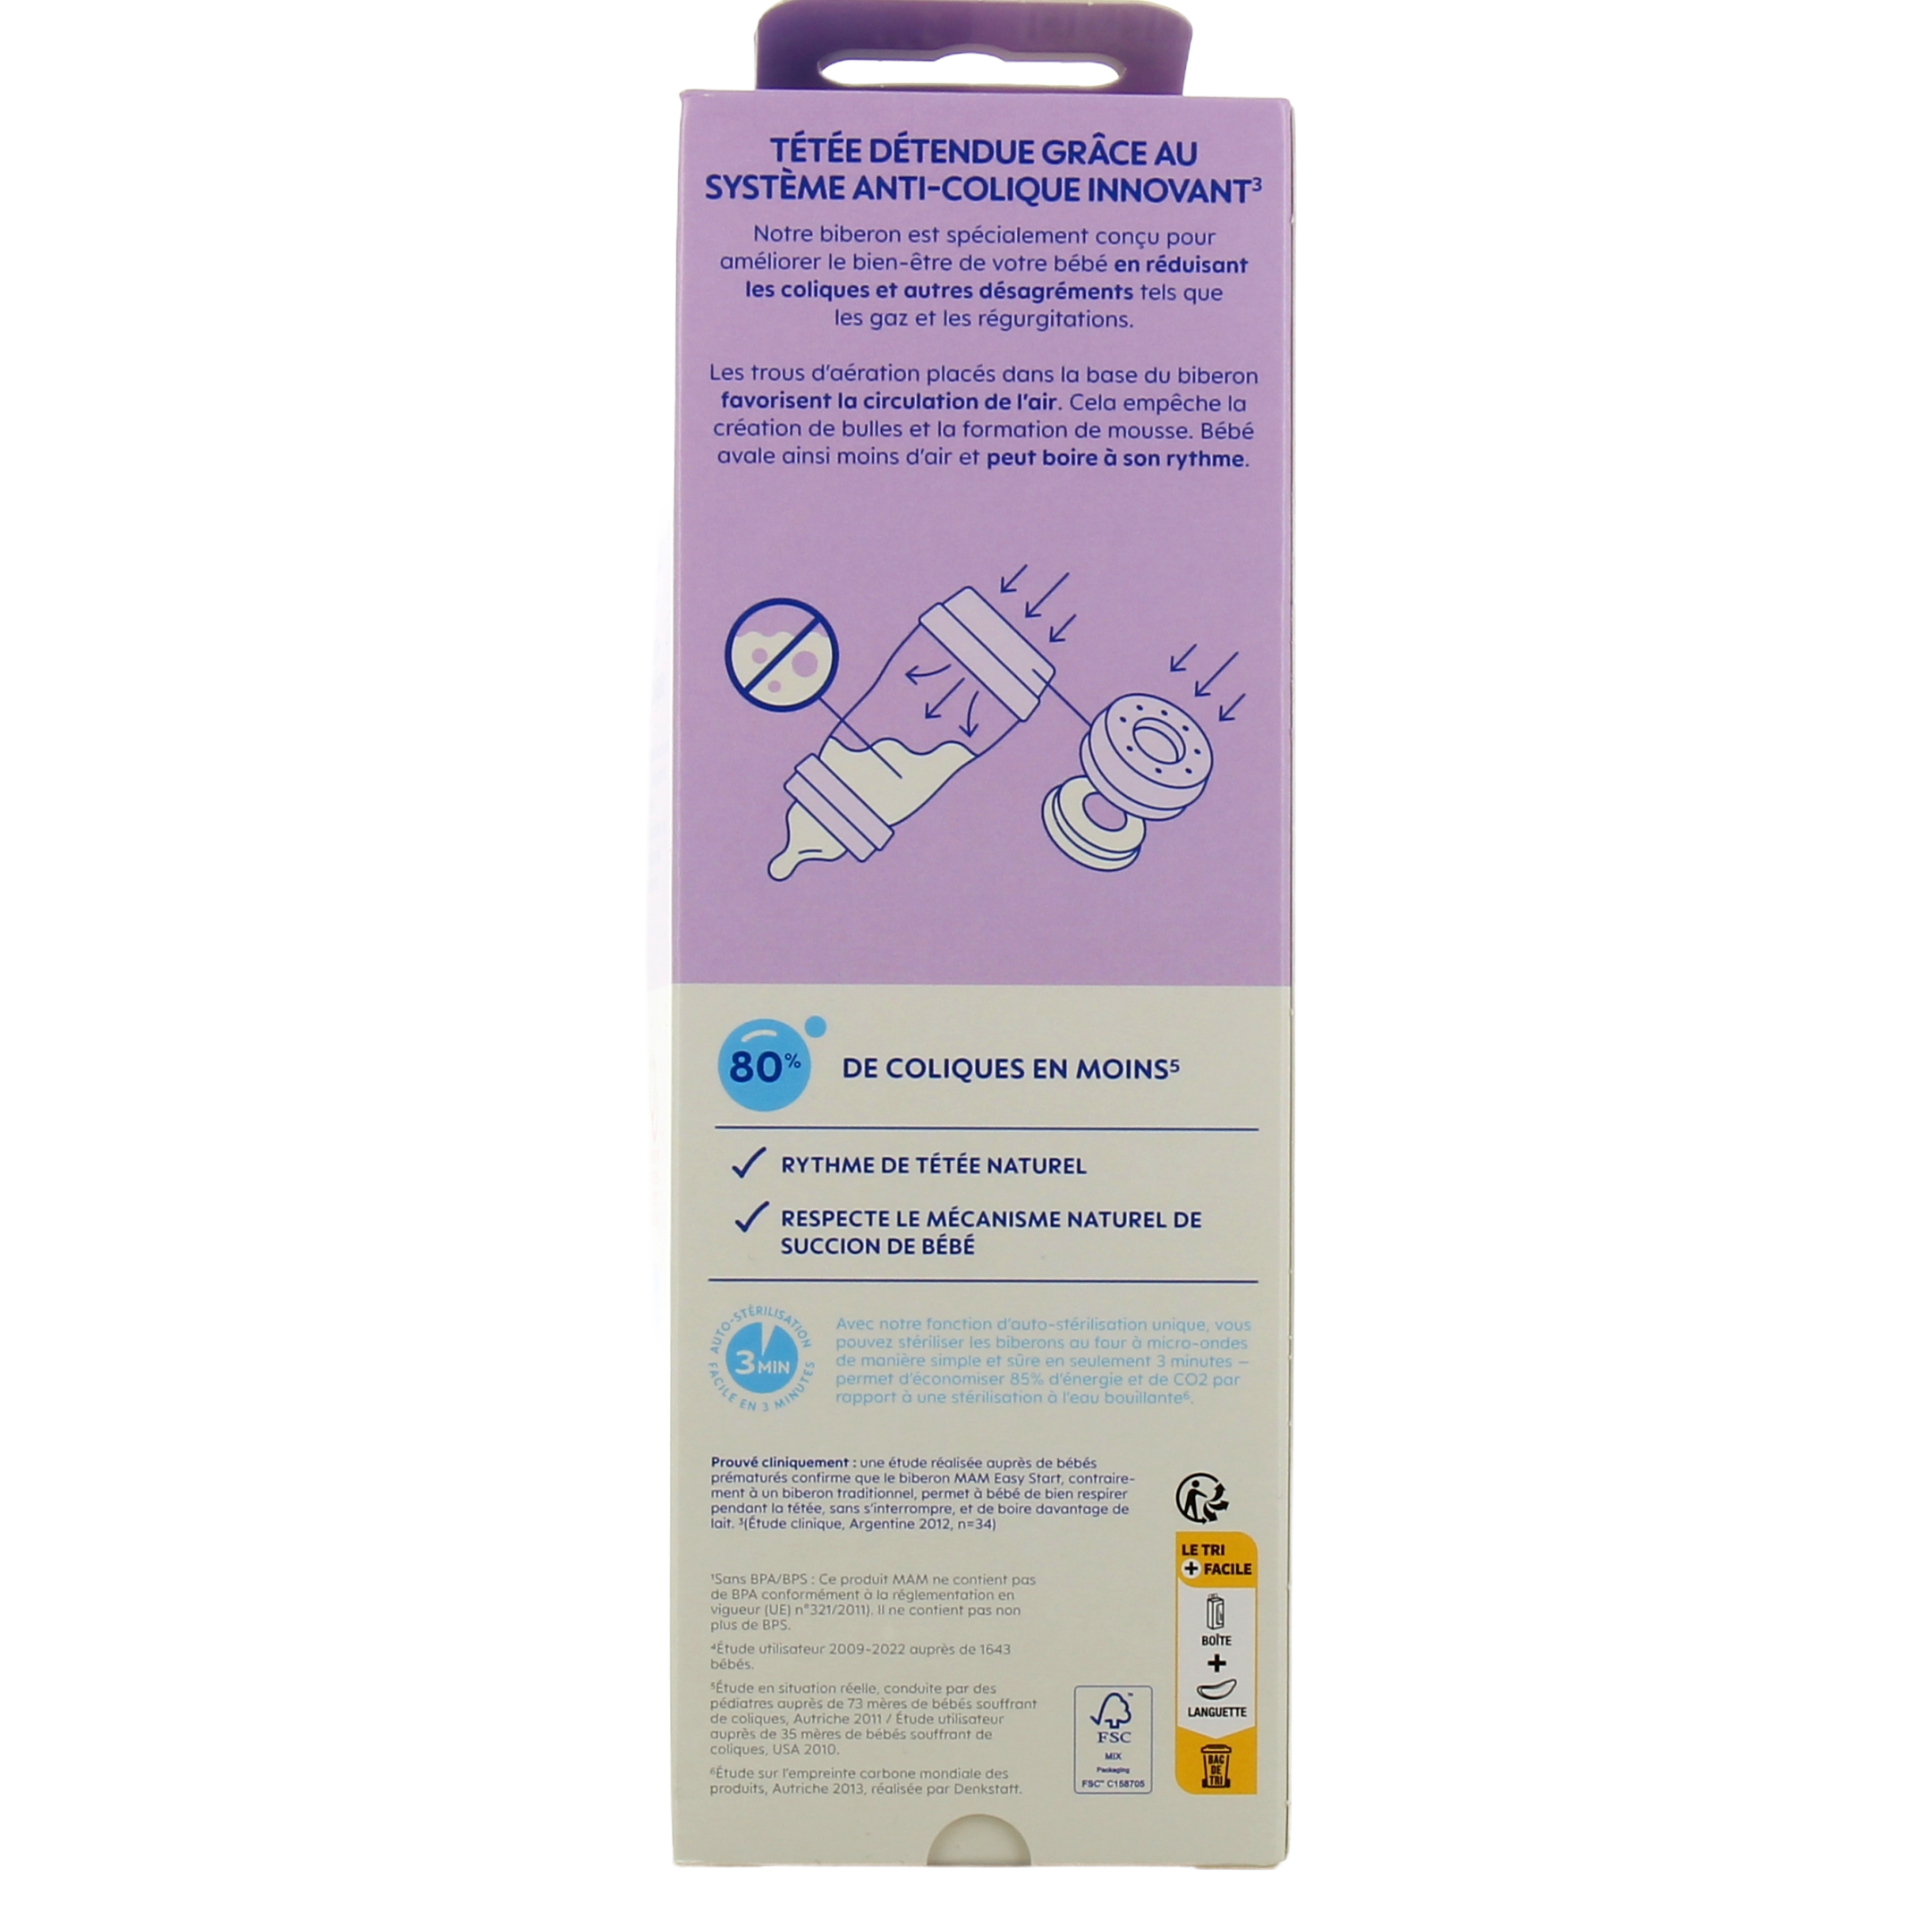 Le biberon MAM anti-colique est enfin disponible en 320 ml - Maximag.fr